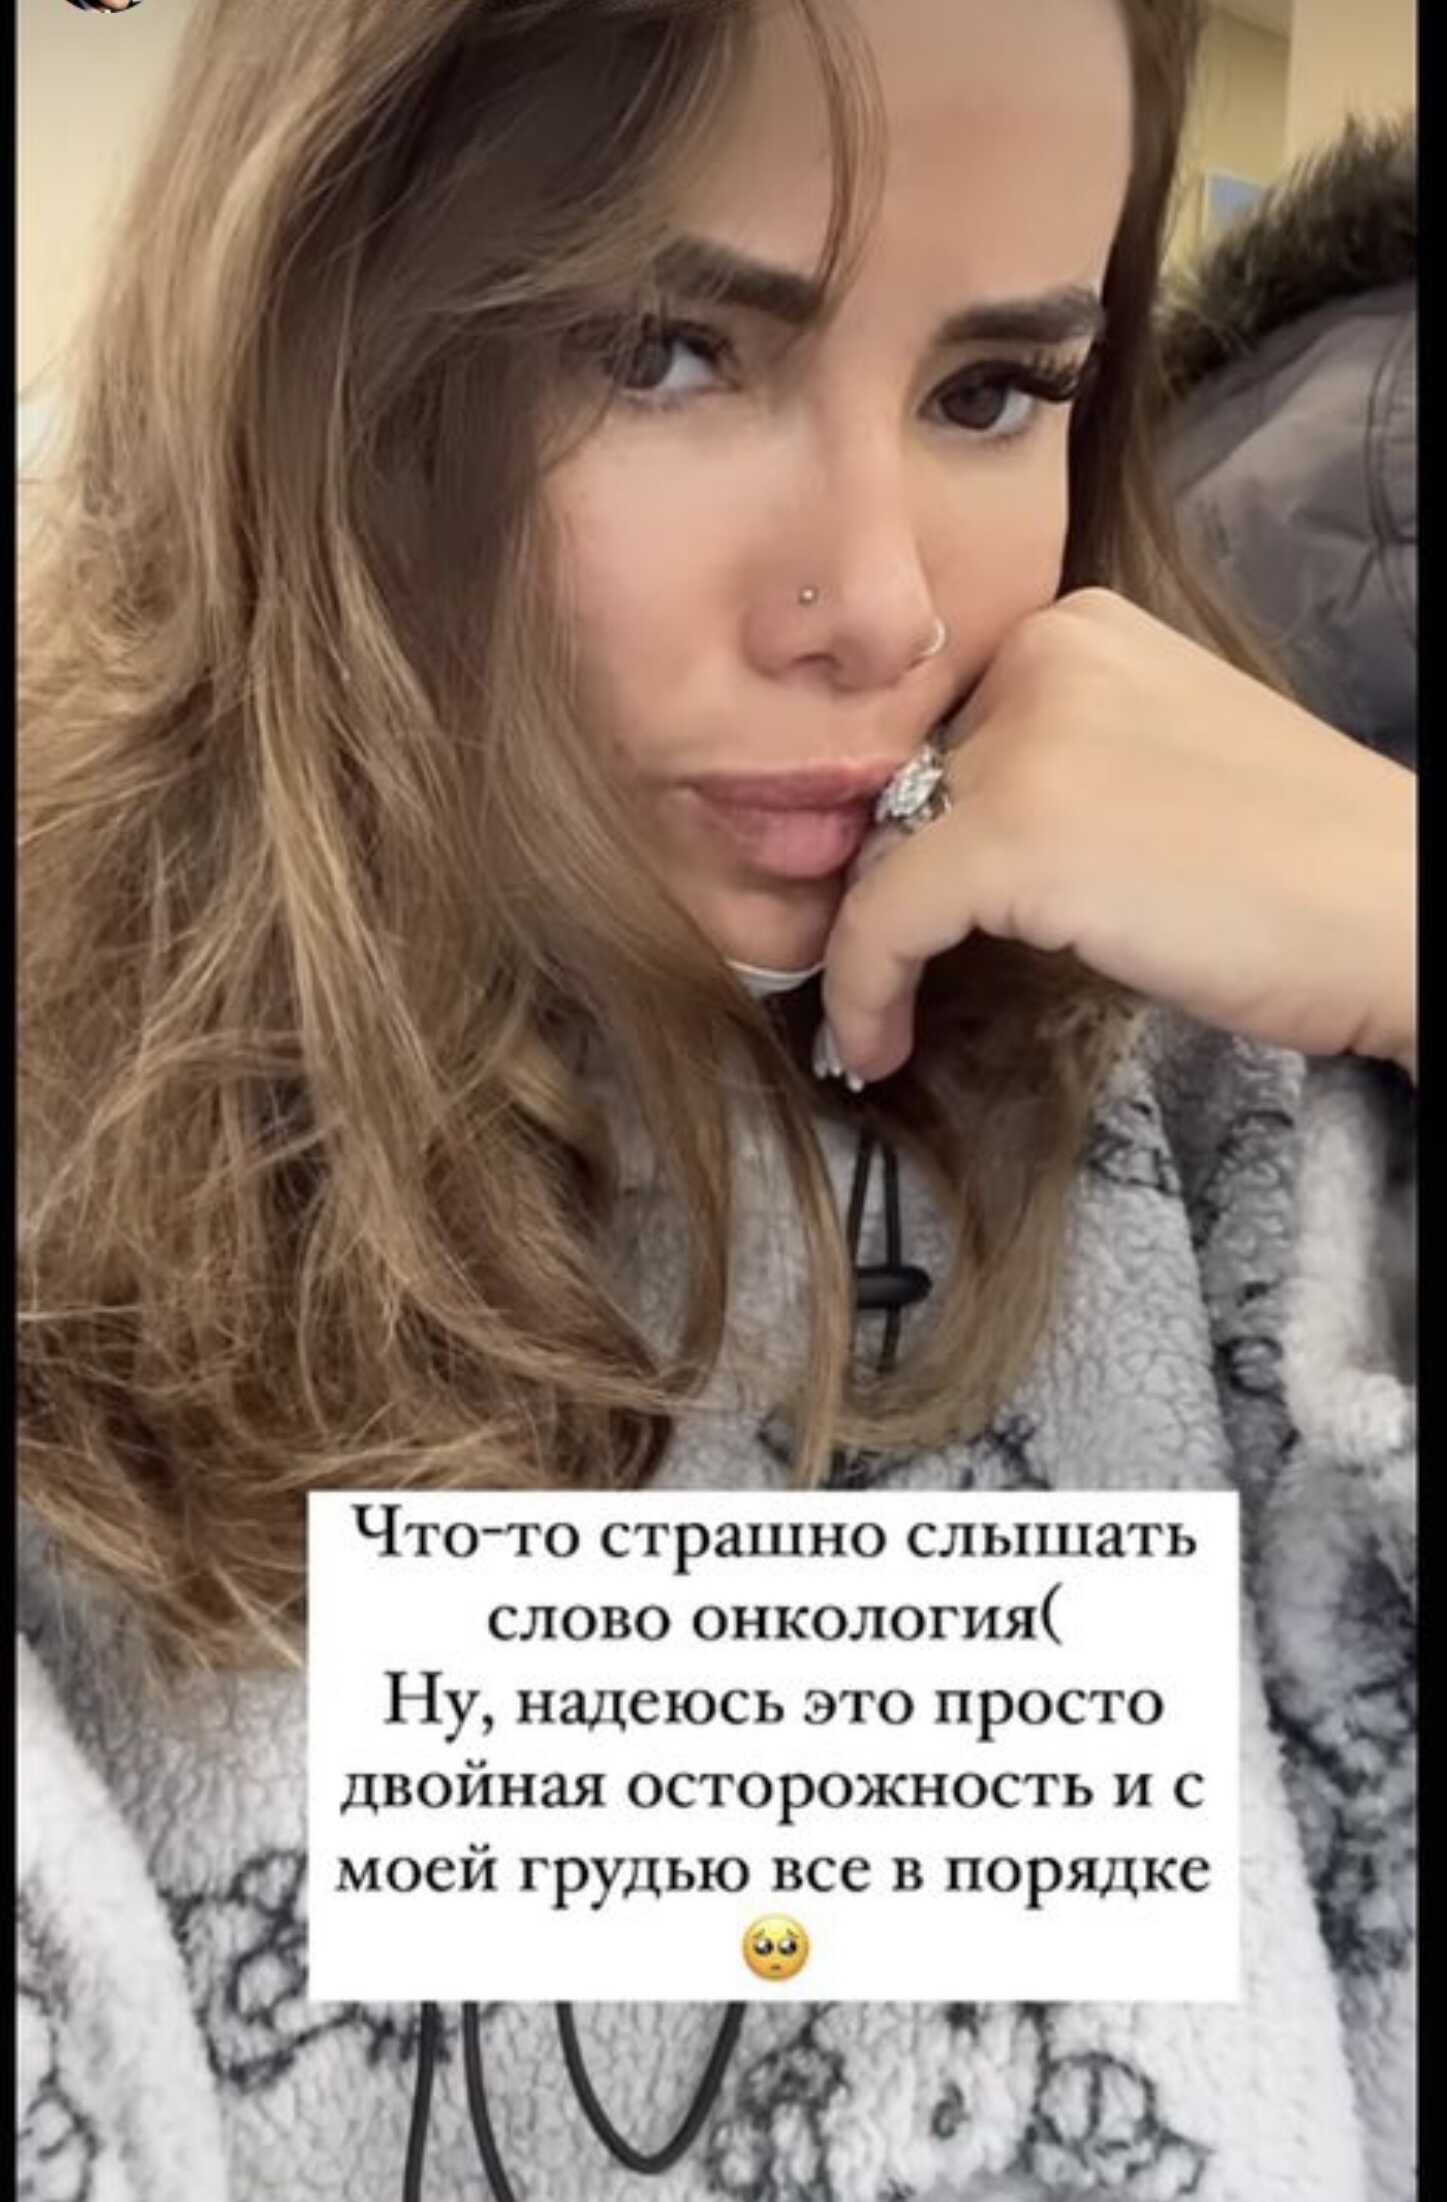 «Страшно слышать слово онкология»: Айза Долматова намекнула на проблемы со здоровьем